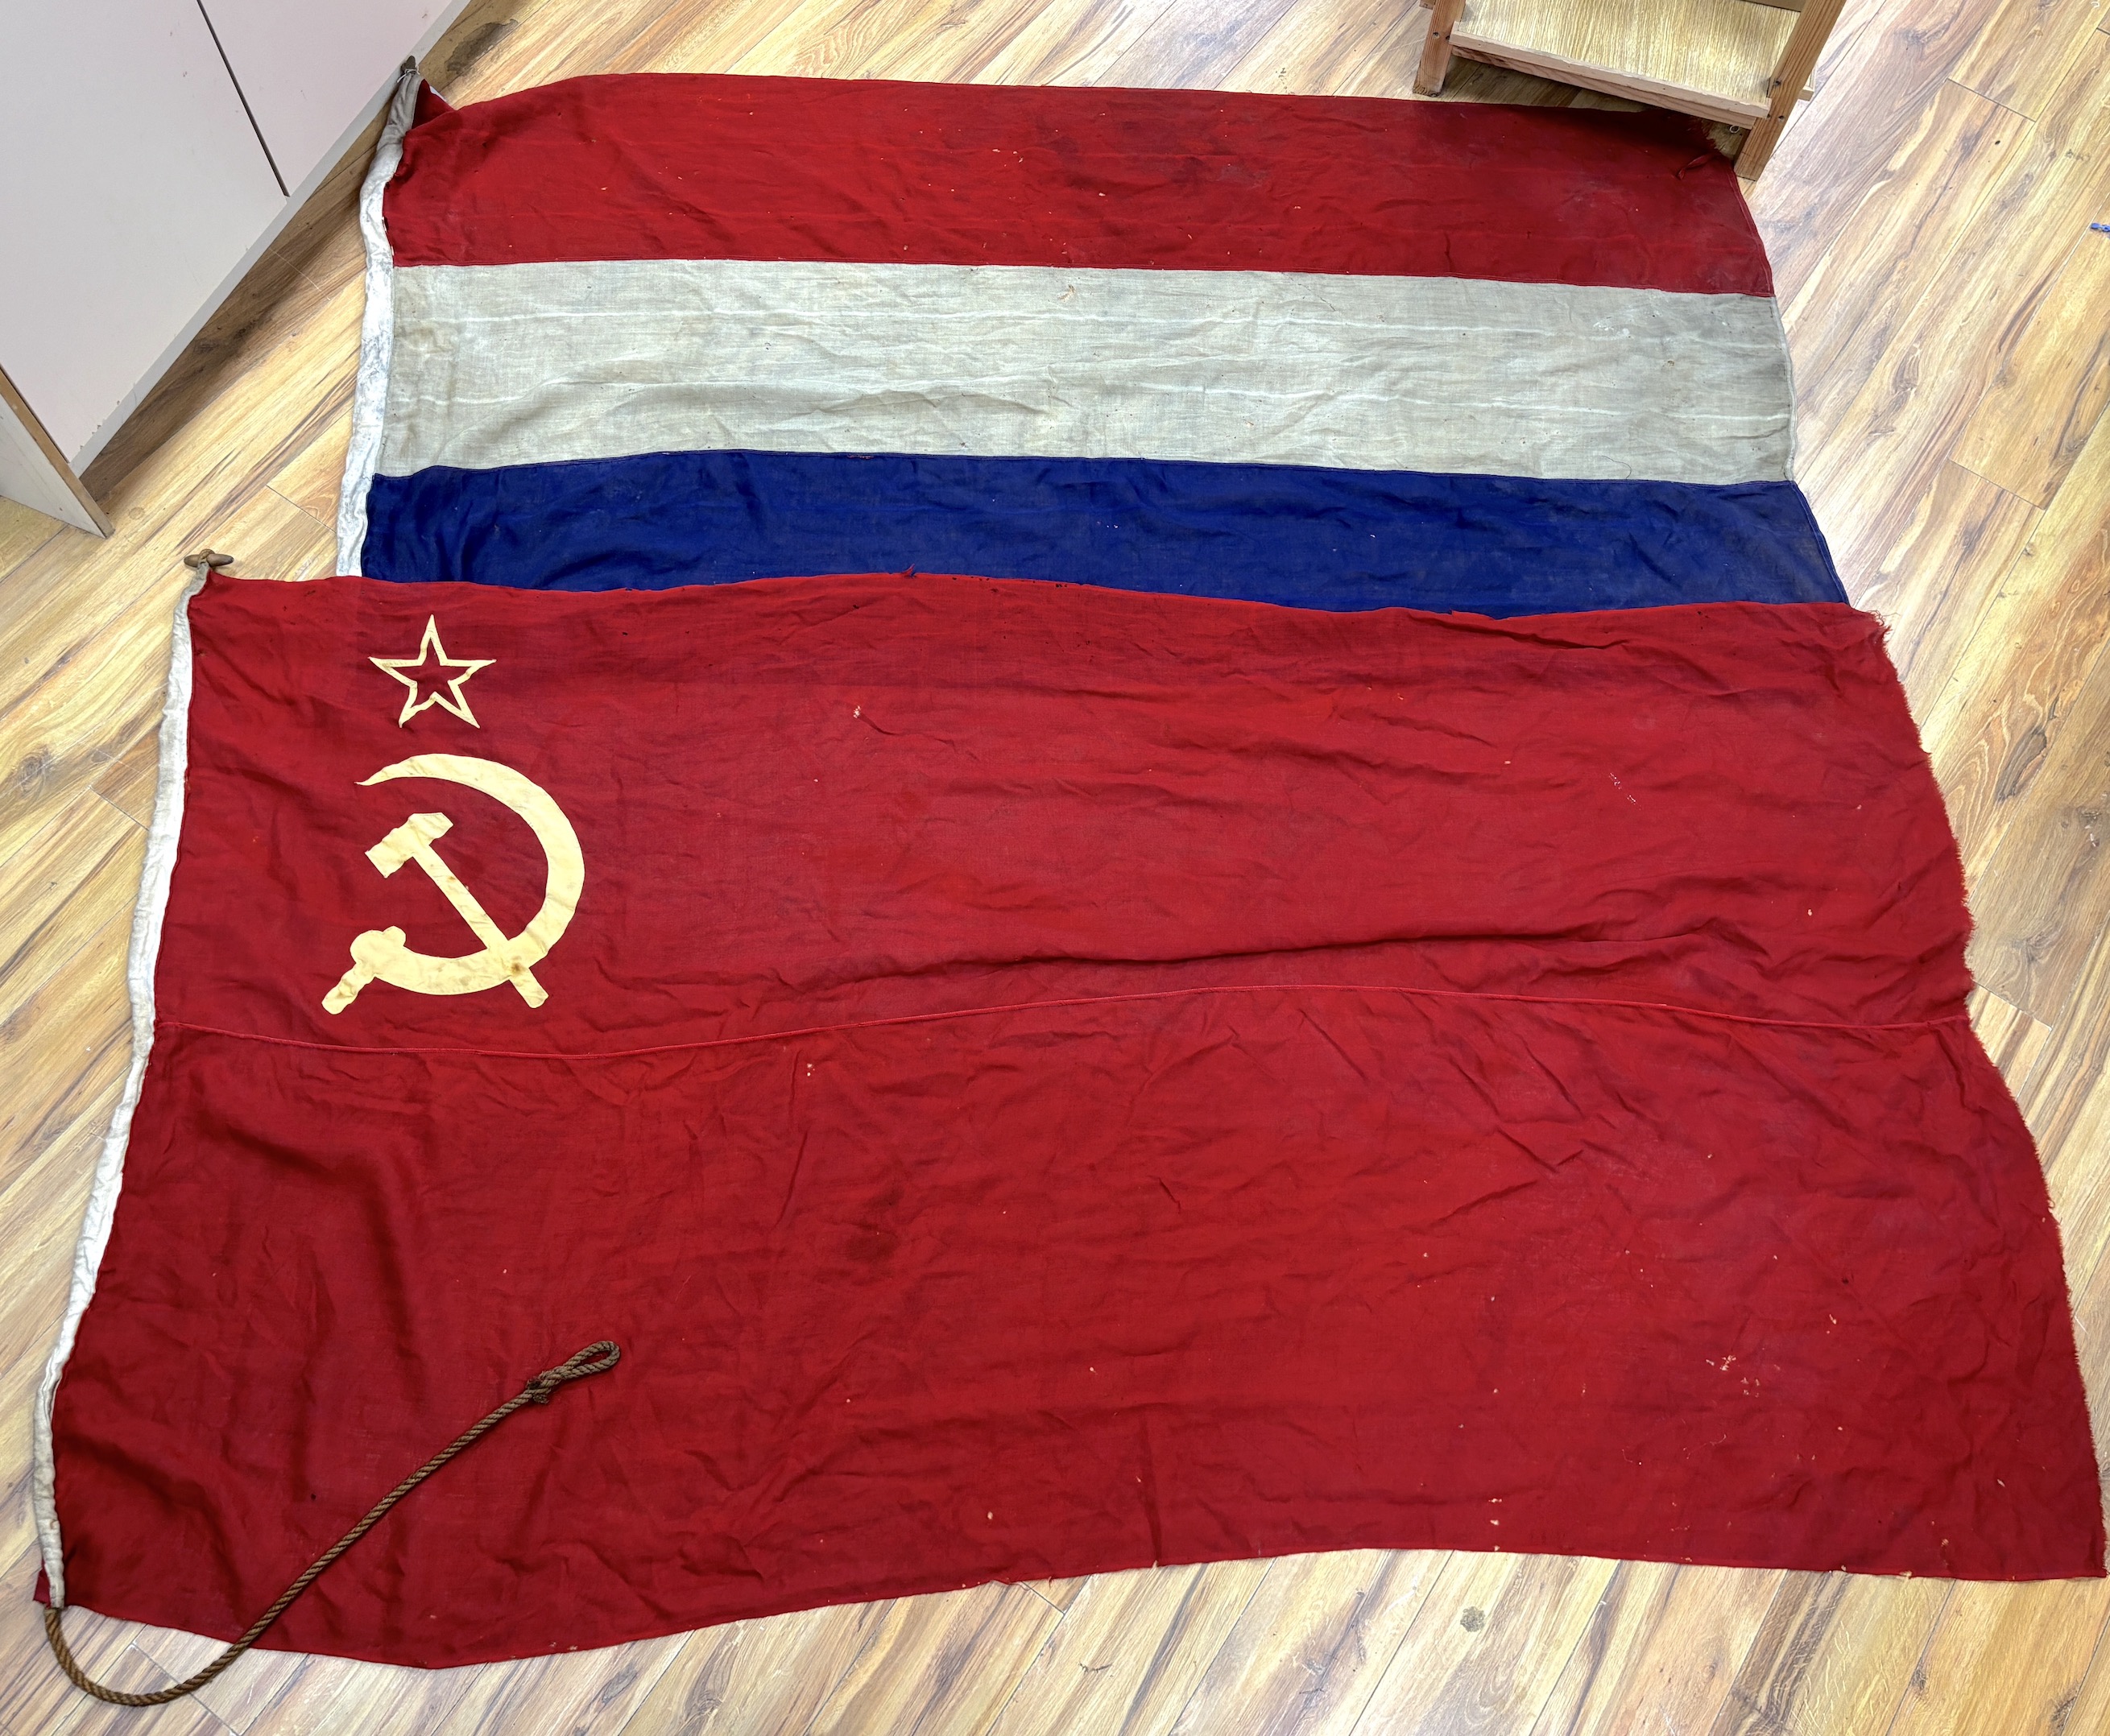 An early 20th century Soviet Union flag and an early 20th century Dutch flag